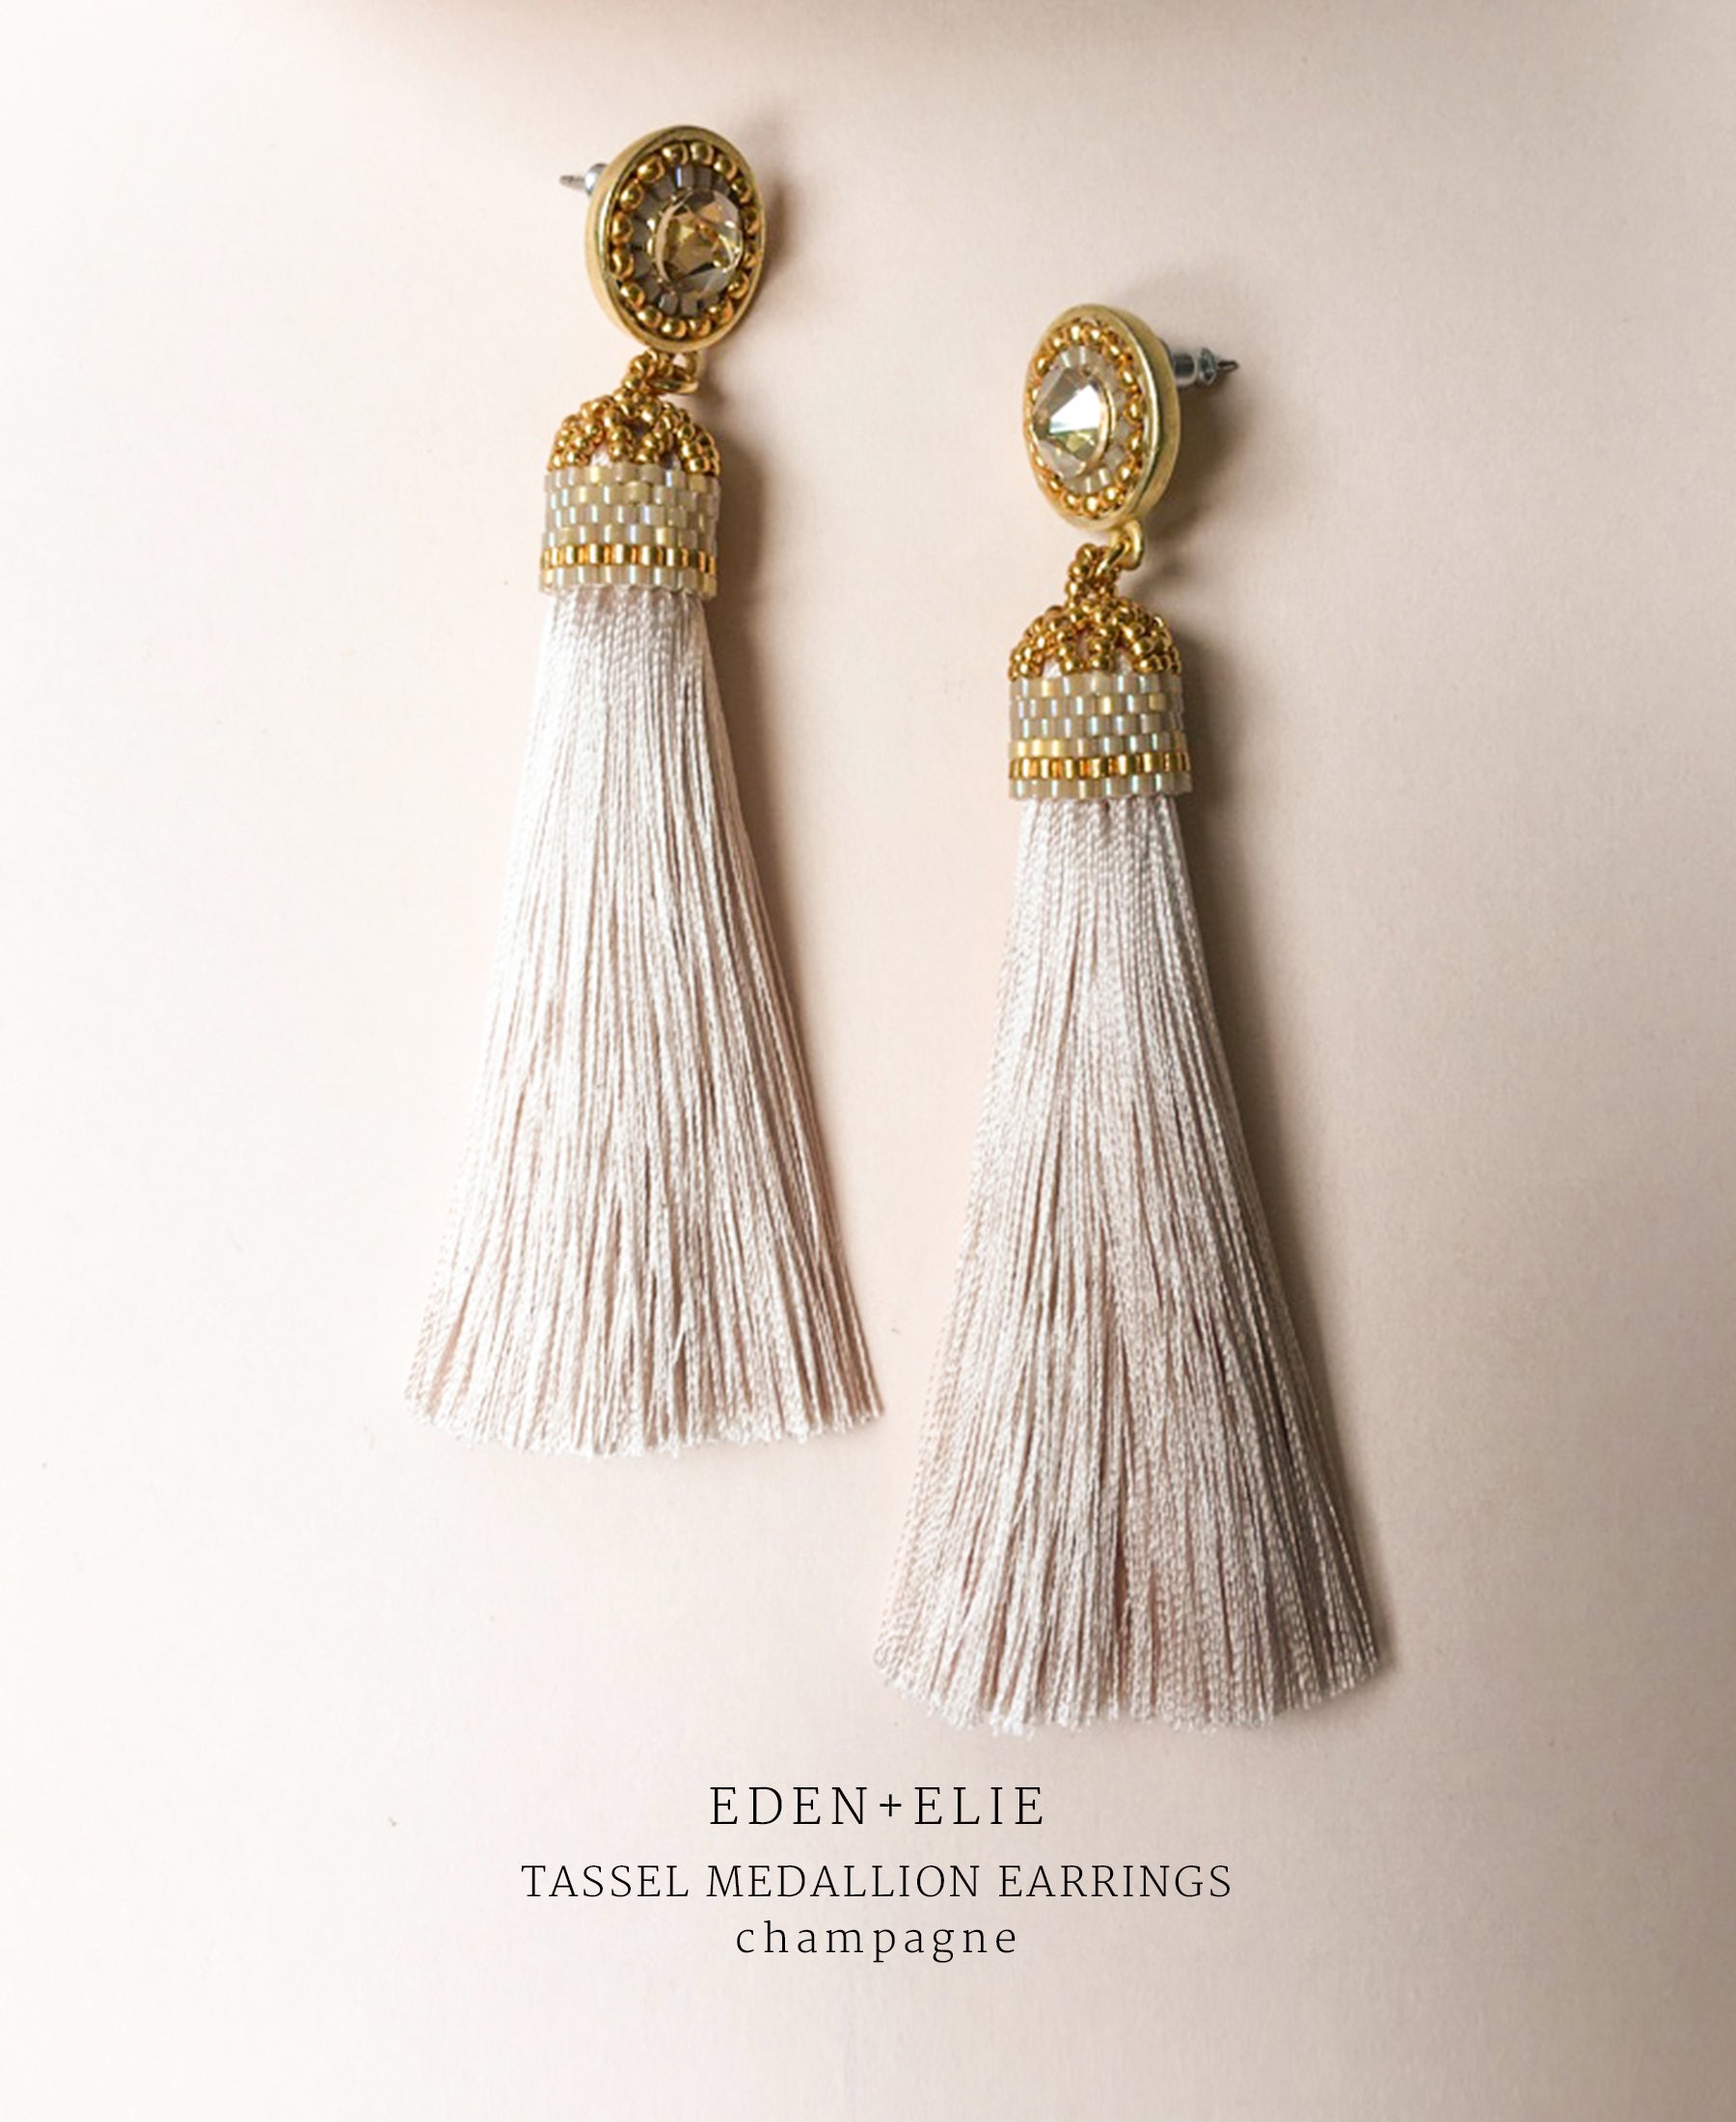 EDEN + ELIE silk tassel statement earrings - champagne